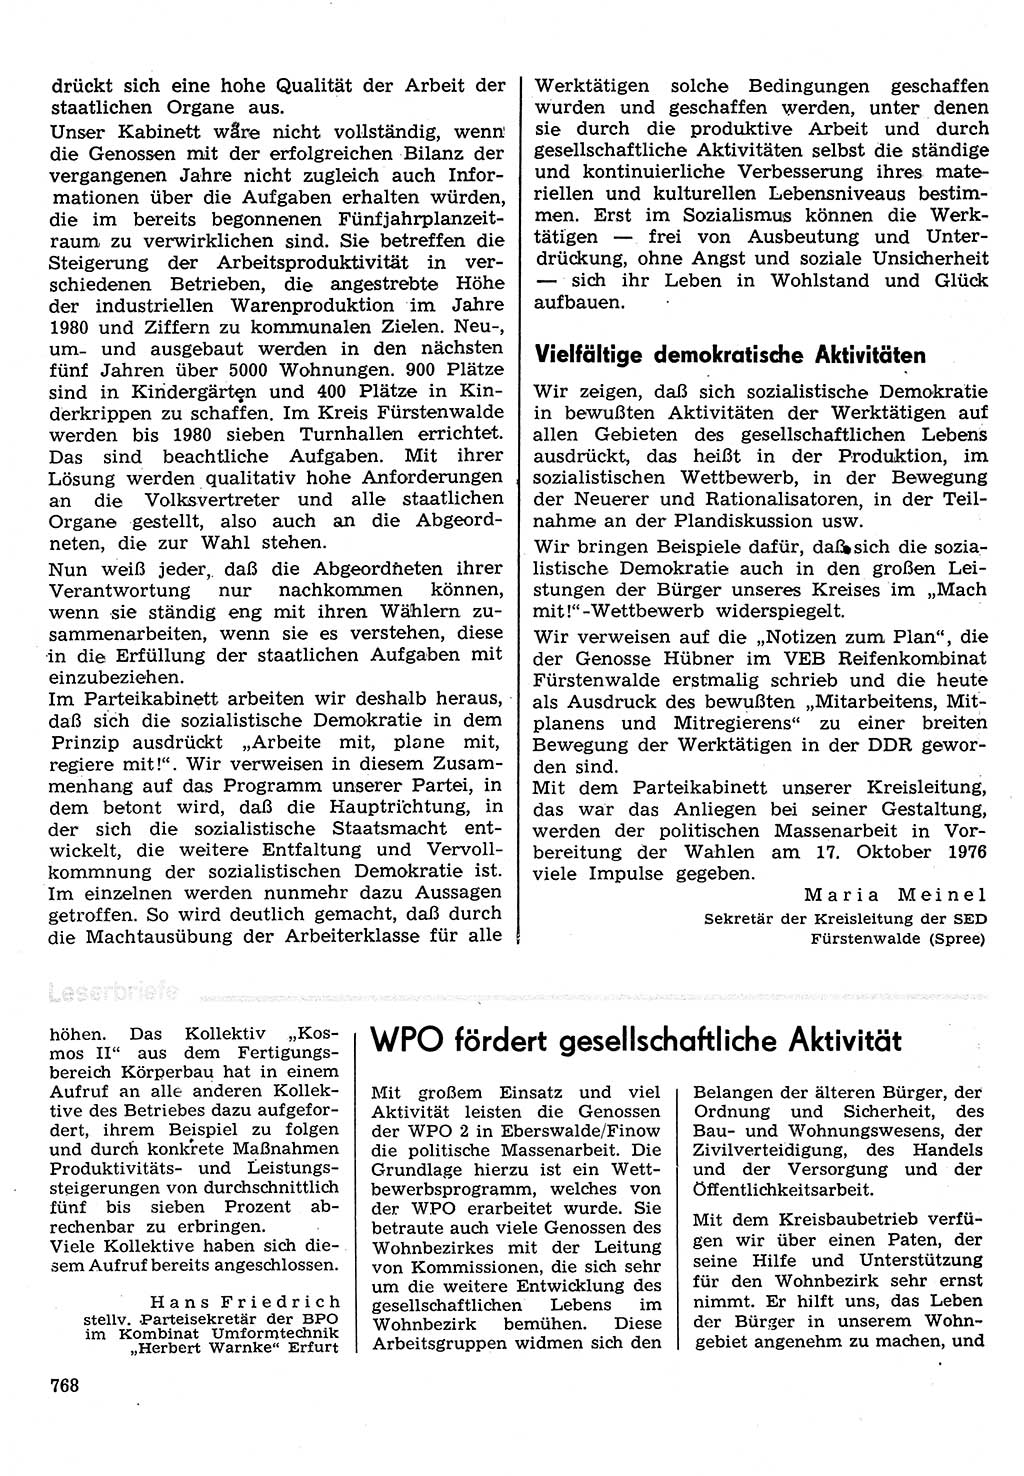 Neuer Weg (NW), Organ des Zentralkomitees (ZK) der SED (Sozialistische Einheitspartei Deutschlands) für Fragen des Parteilebens, 31. Jahrgang [Deutsche Demokratische Republik (DDR)] 1976, Seite 768 (NW ZK SED DDR 1976, S. 768)